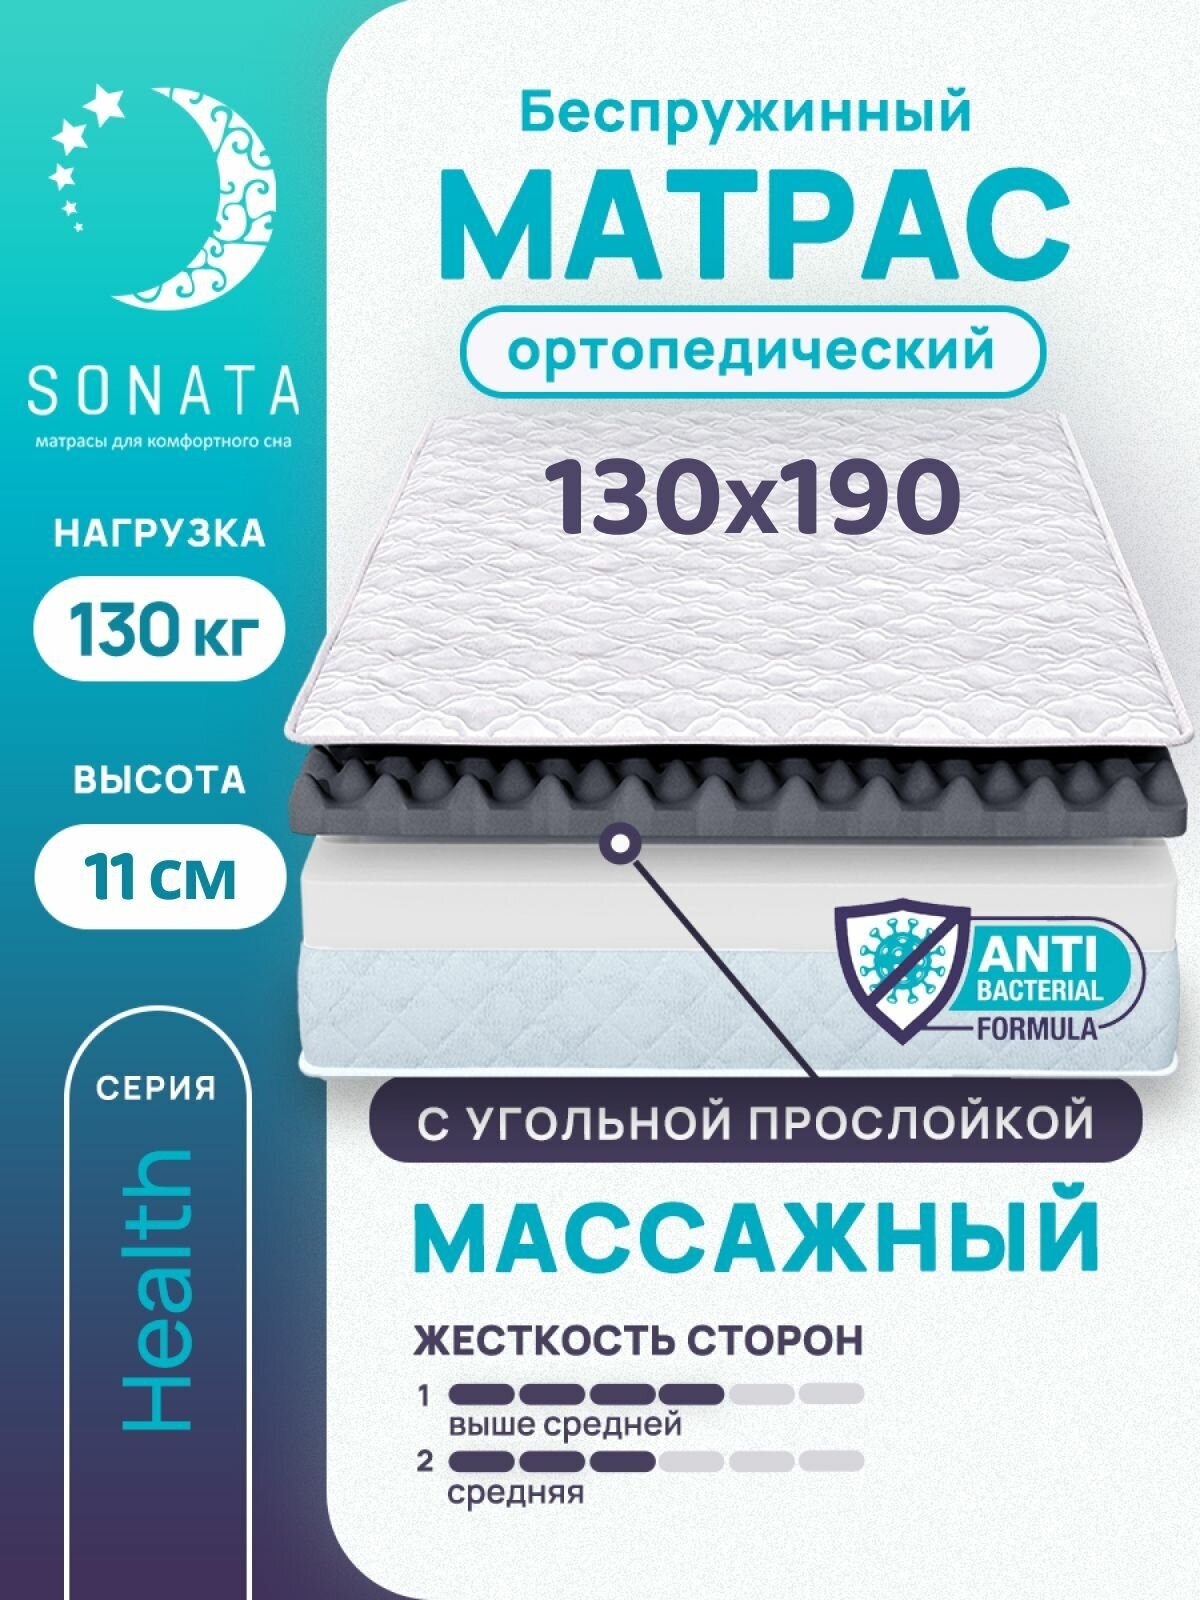 Матрас 130х190 см SONATA, беспружинный, односпальный, матрац для кровати, высота 11 см, с массажным эффектом